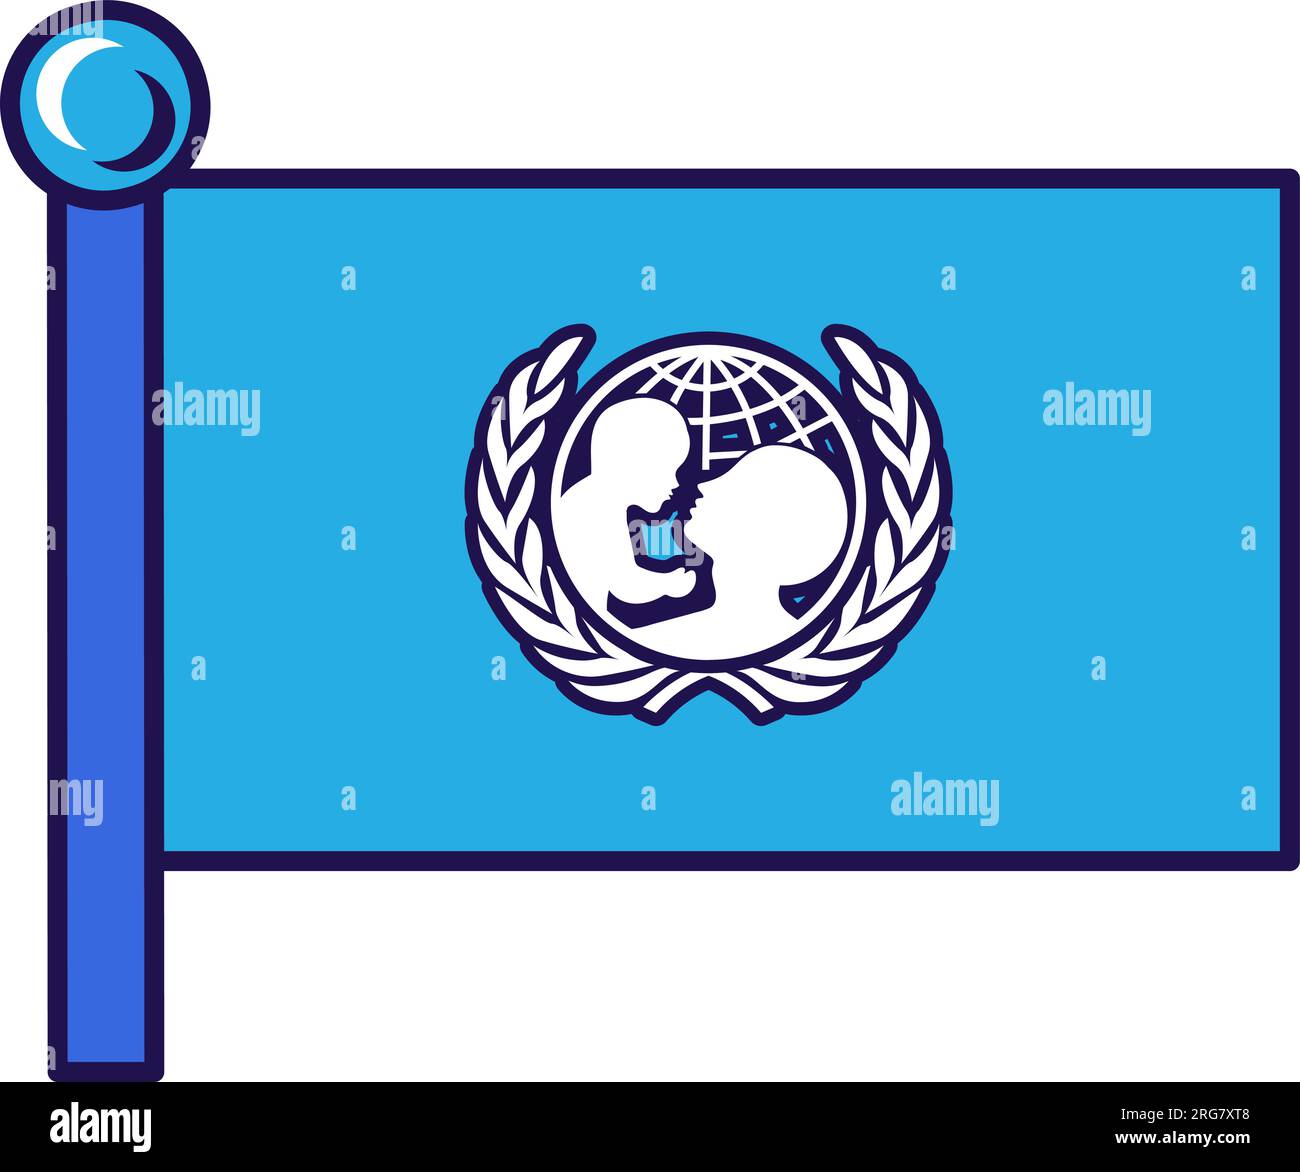 Bandera de UNICEF en el poste de bandera para el registro de un evento solemne, reuniendo invitados extranjeros. Unión del Fondo de las Naciones Unidas para la Infancia. Vector simple aislado en blanco Ilustración del Vector